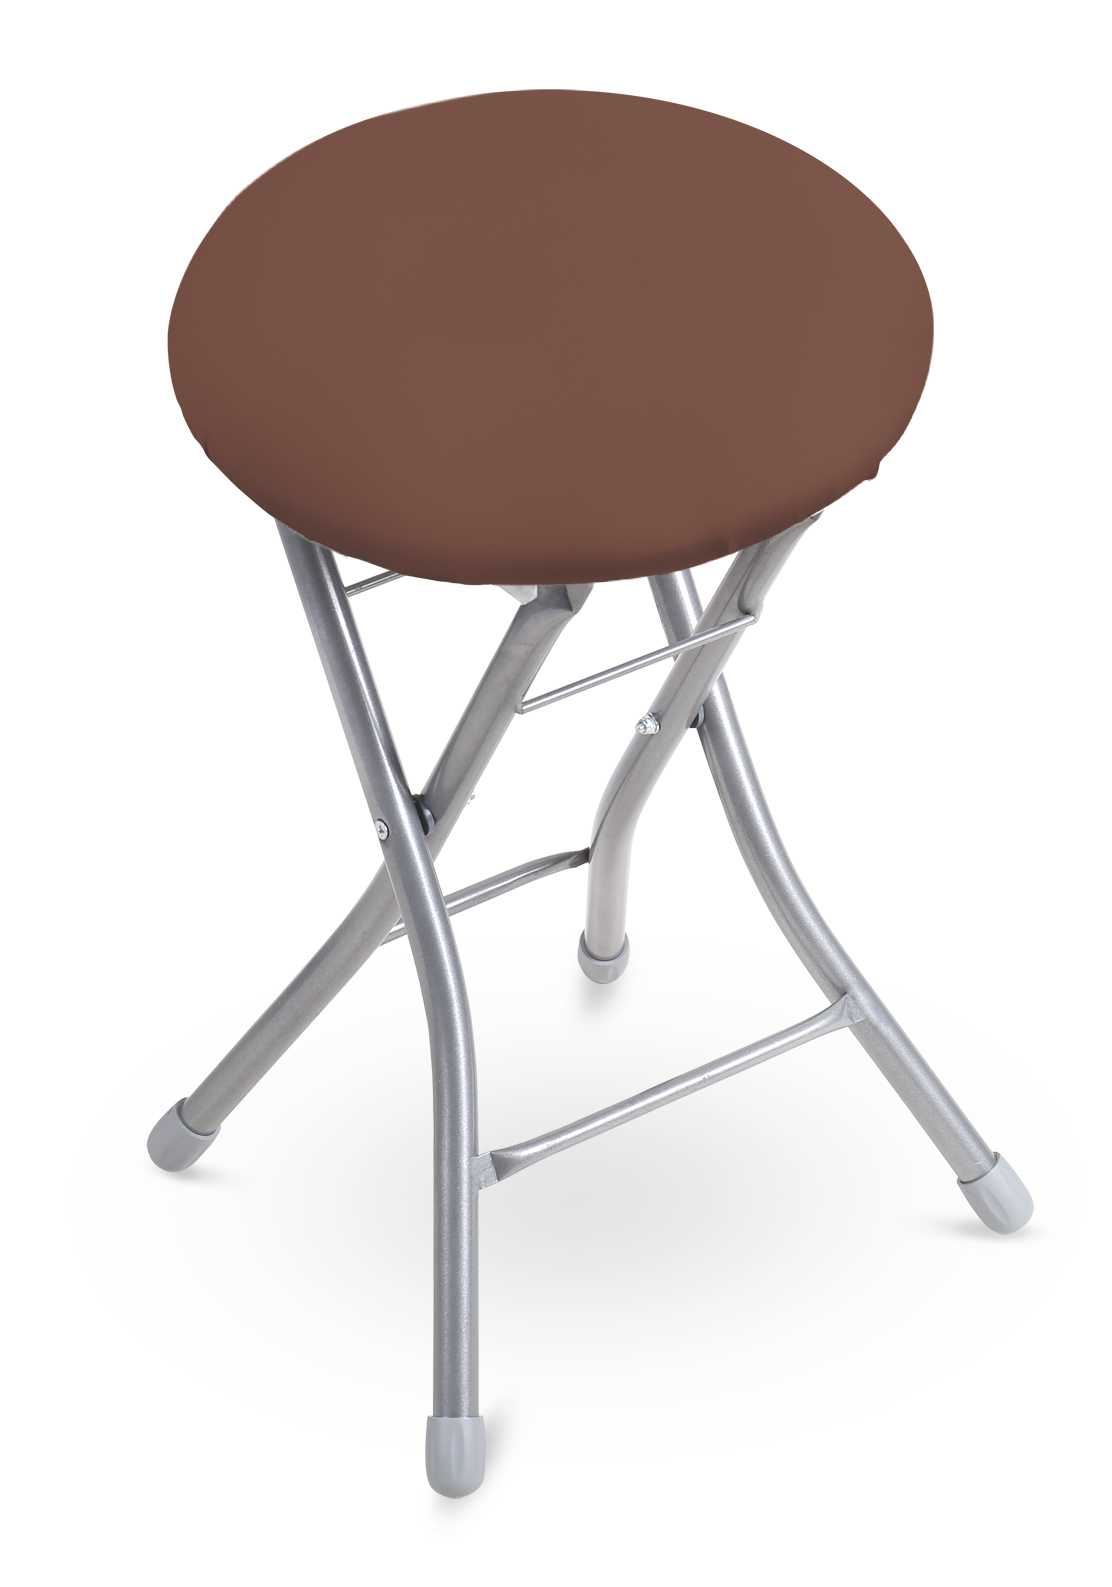 Дизайнерские складные стулья - купить стильные оригинальные складные стулья в москве, цена в интернет-магазине